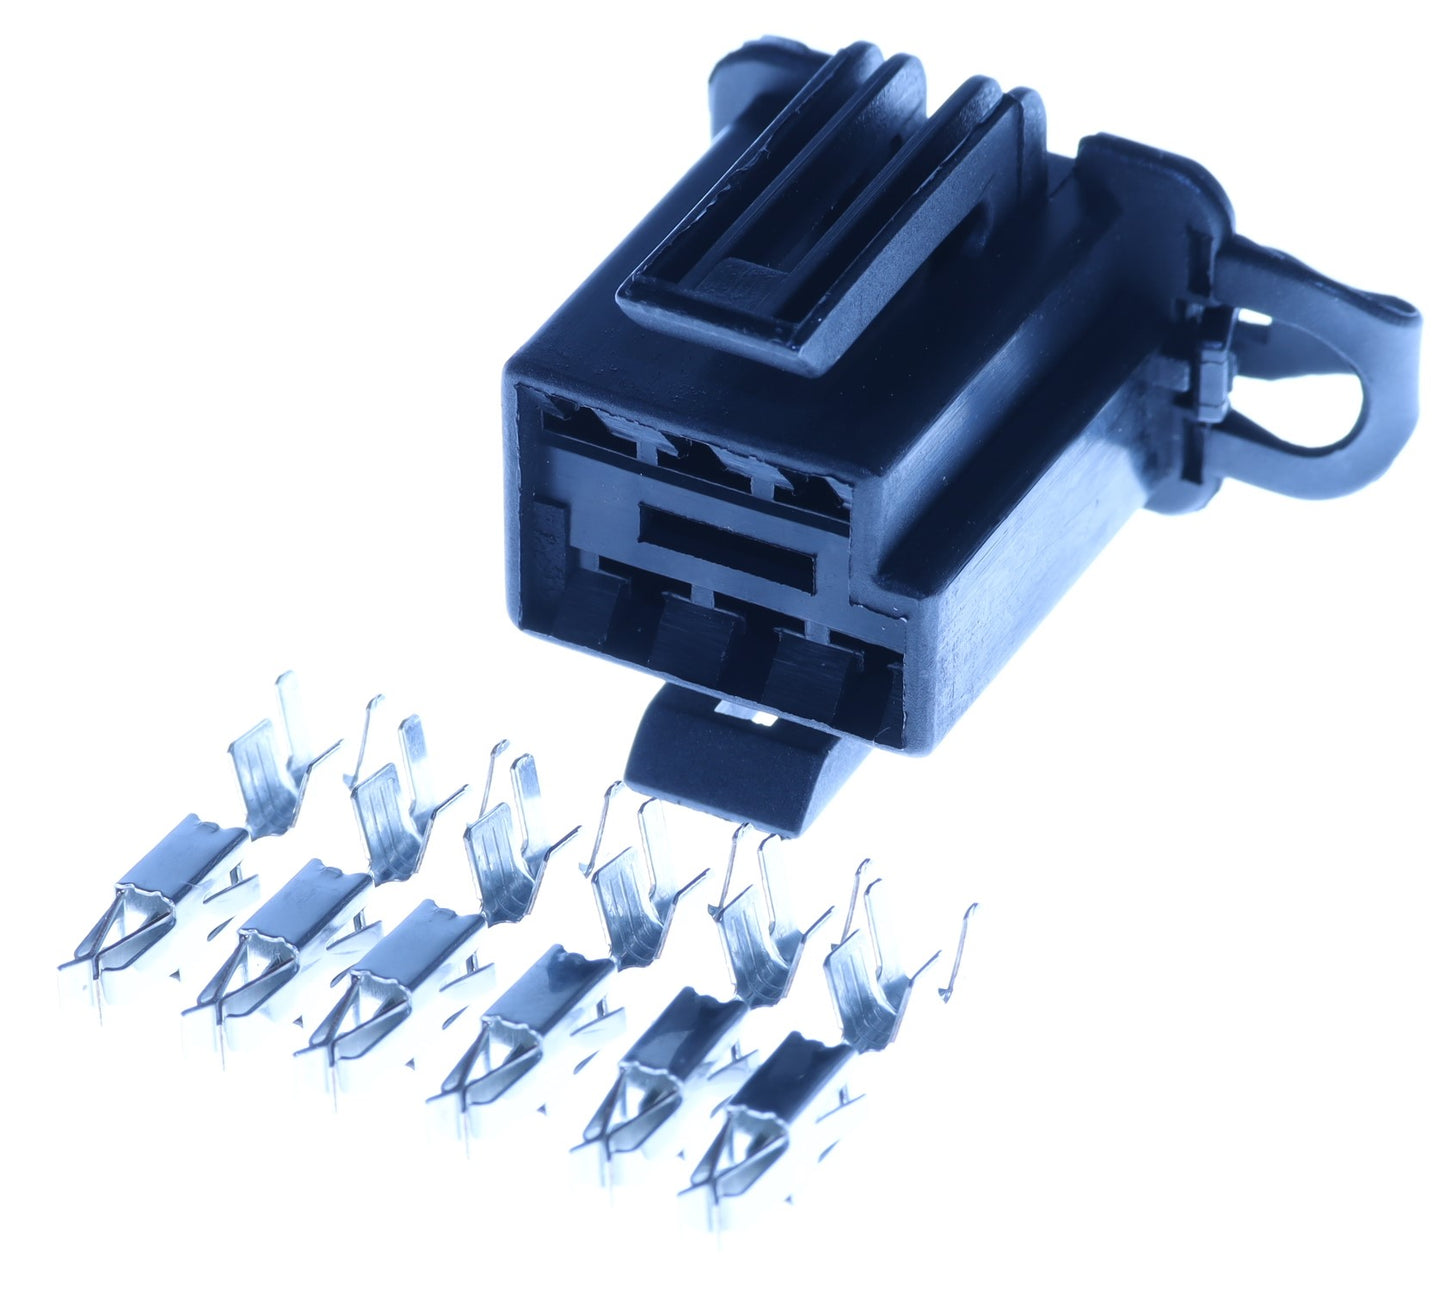 Connector männlich 6 polig mit Einzeladerabdichtungen & Crimpverbinder CSM13006